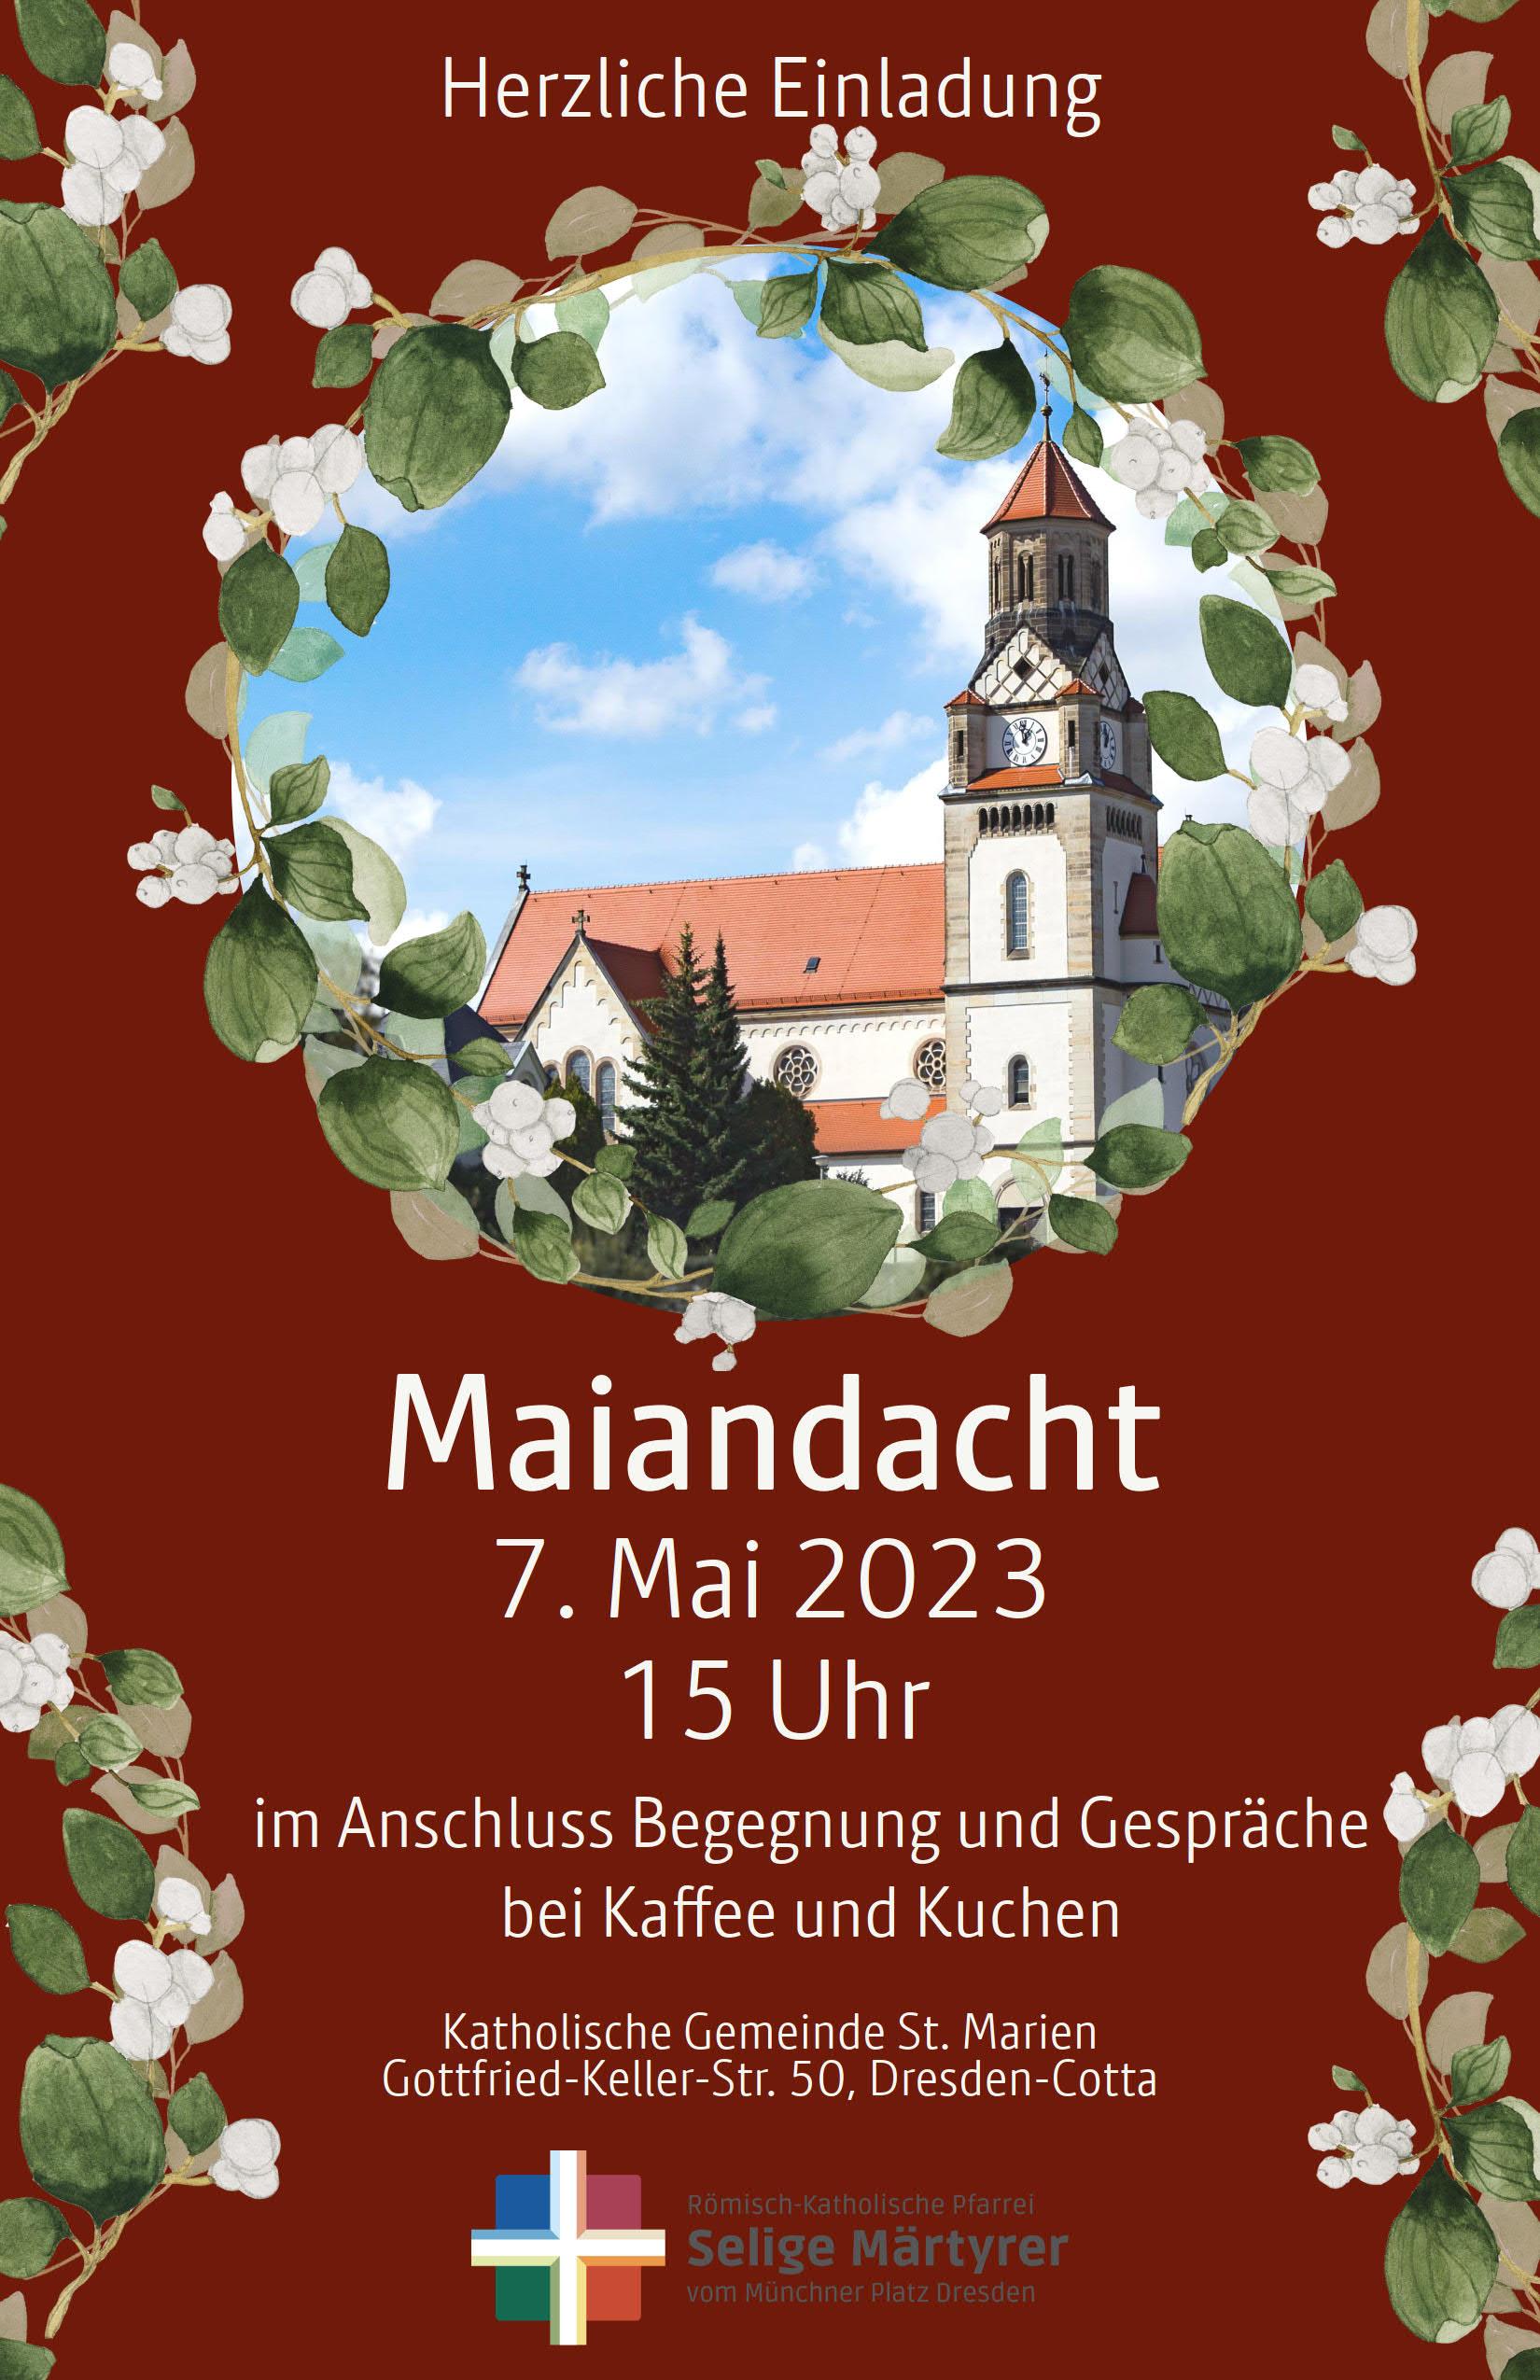 maiandacht23_ | Kath. Pfarrei Selige Märtyrer vom Münchner Platz - Aktuelles